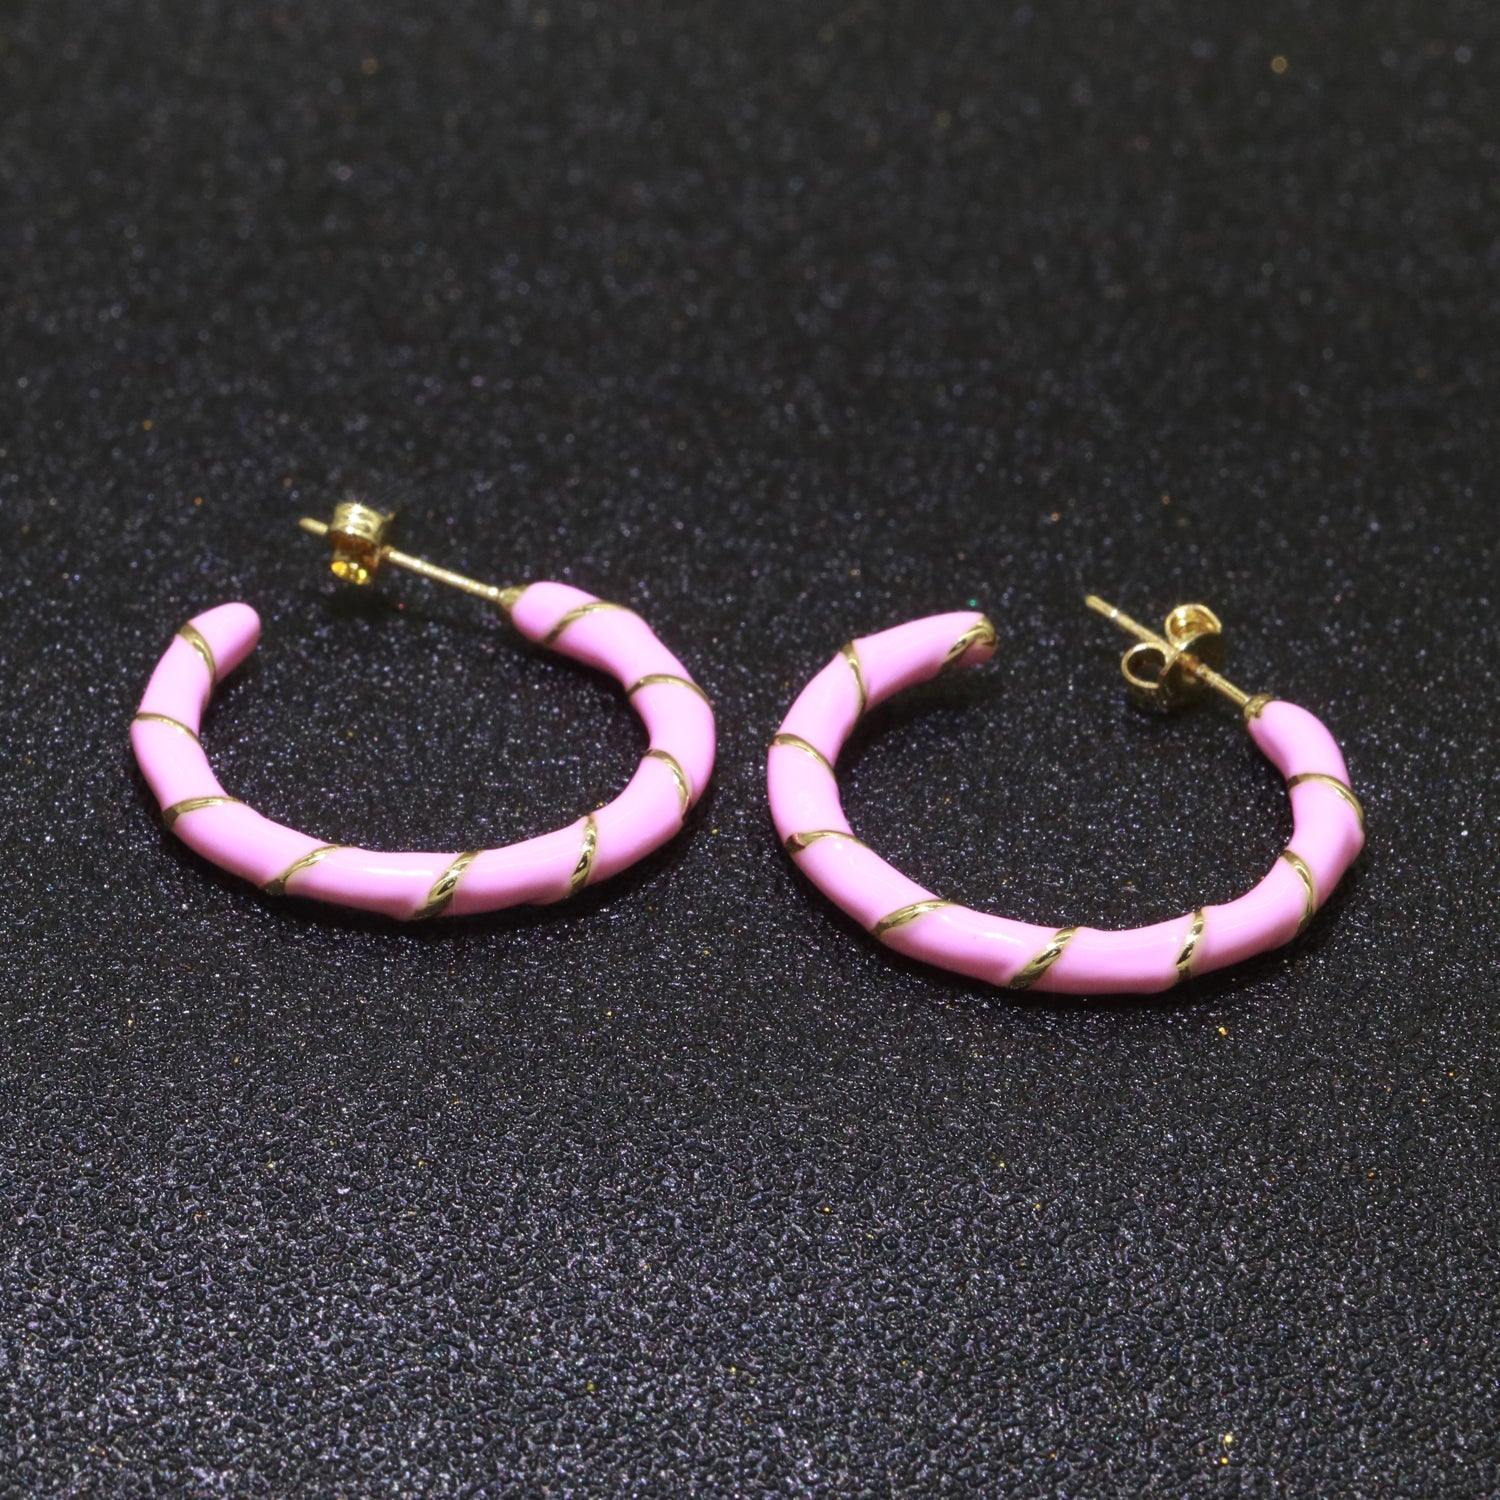 Baby Pink Enamel Hoop Earring with Gold Swirl 26mm Hoop earring Jewelry Gift - DLUXCA